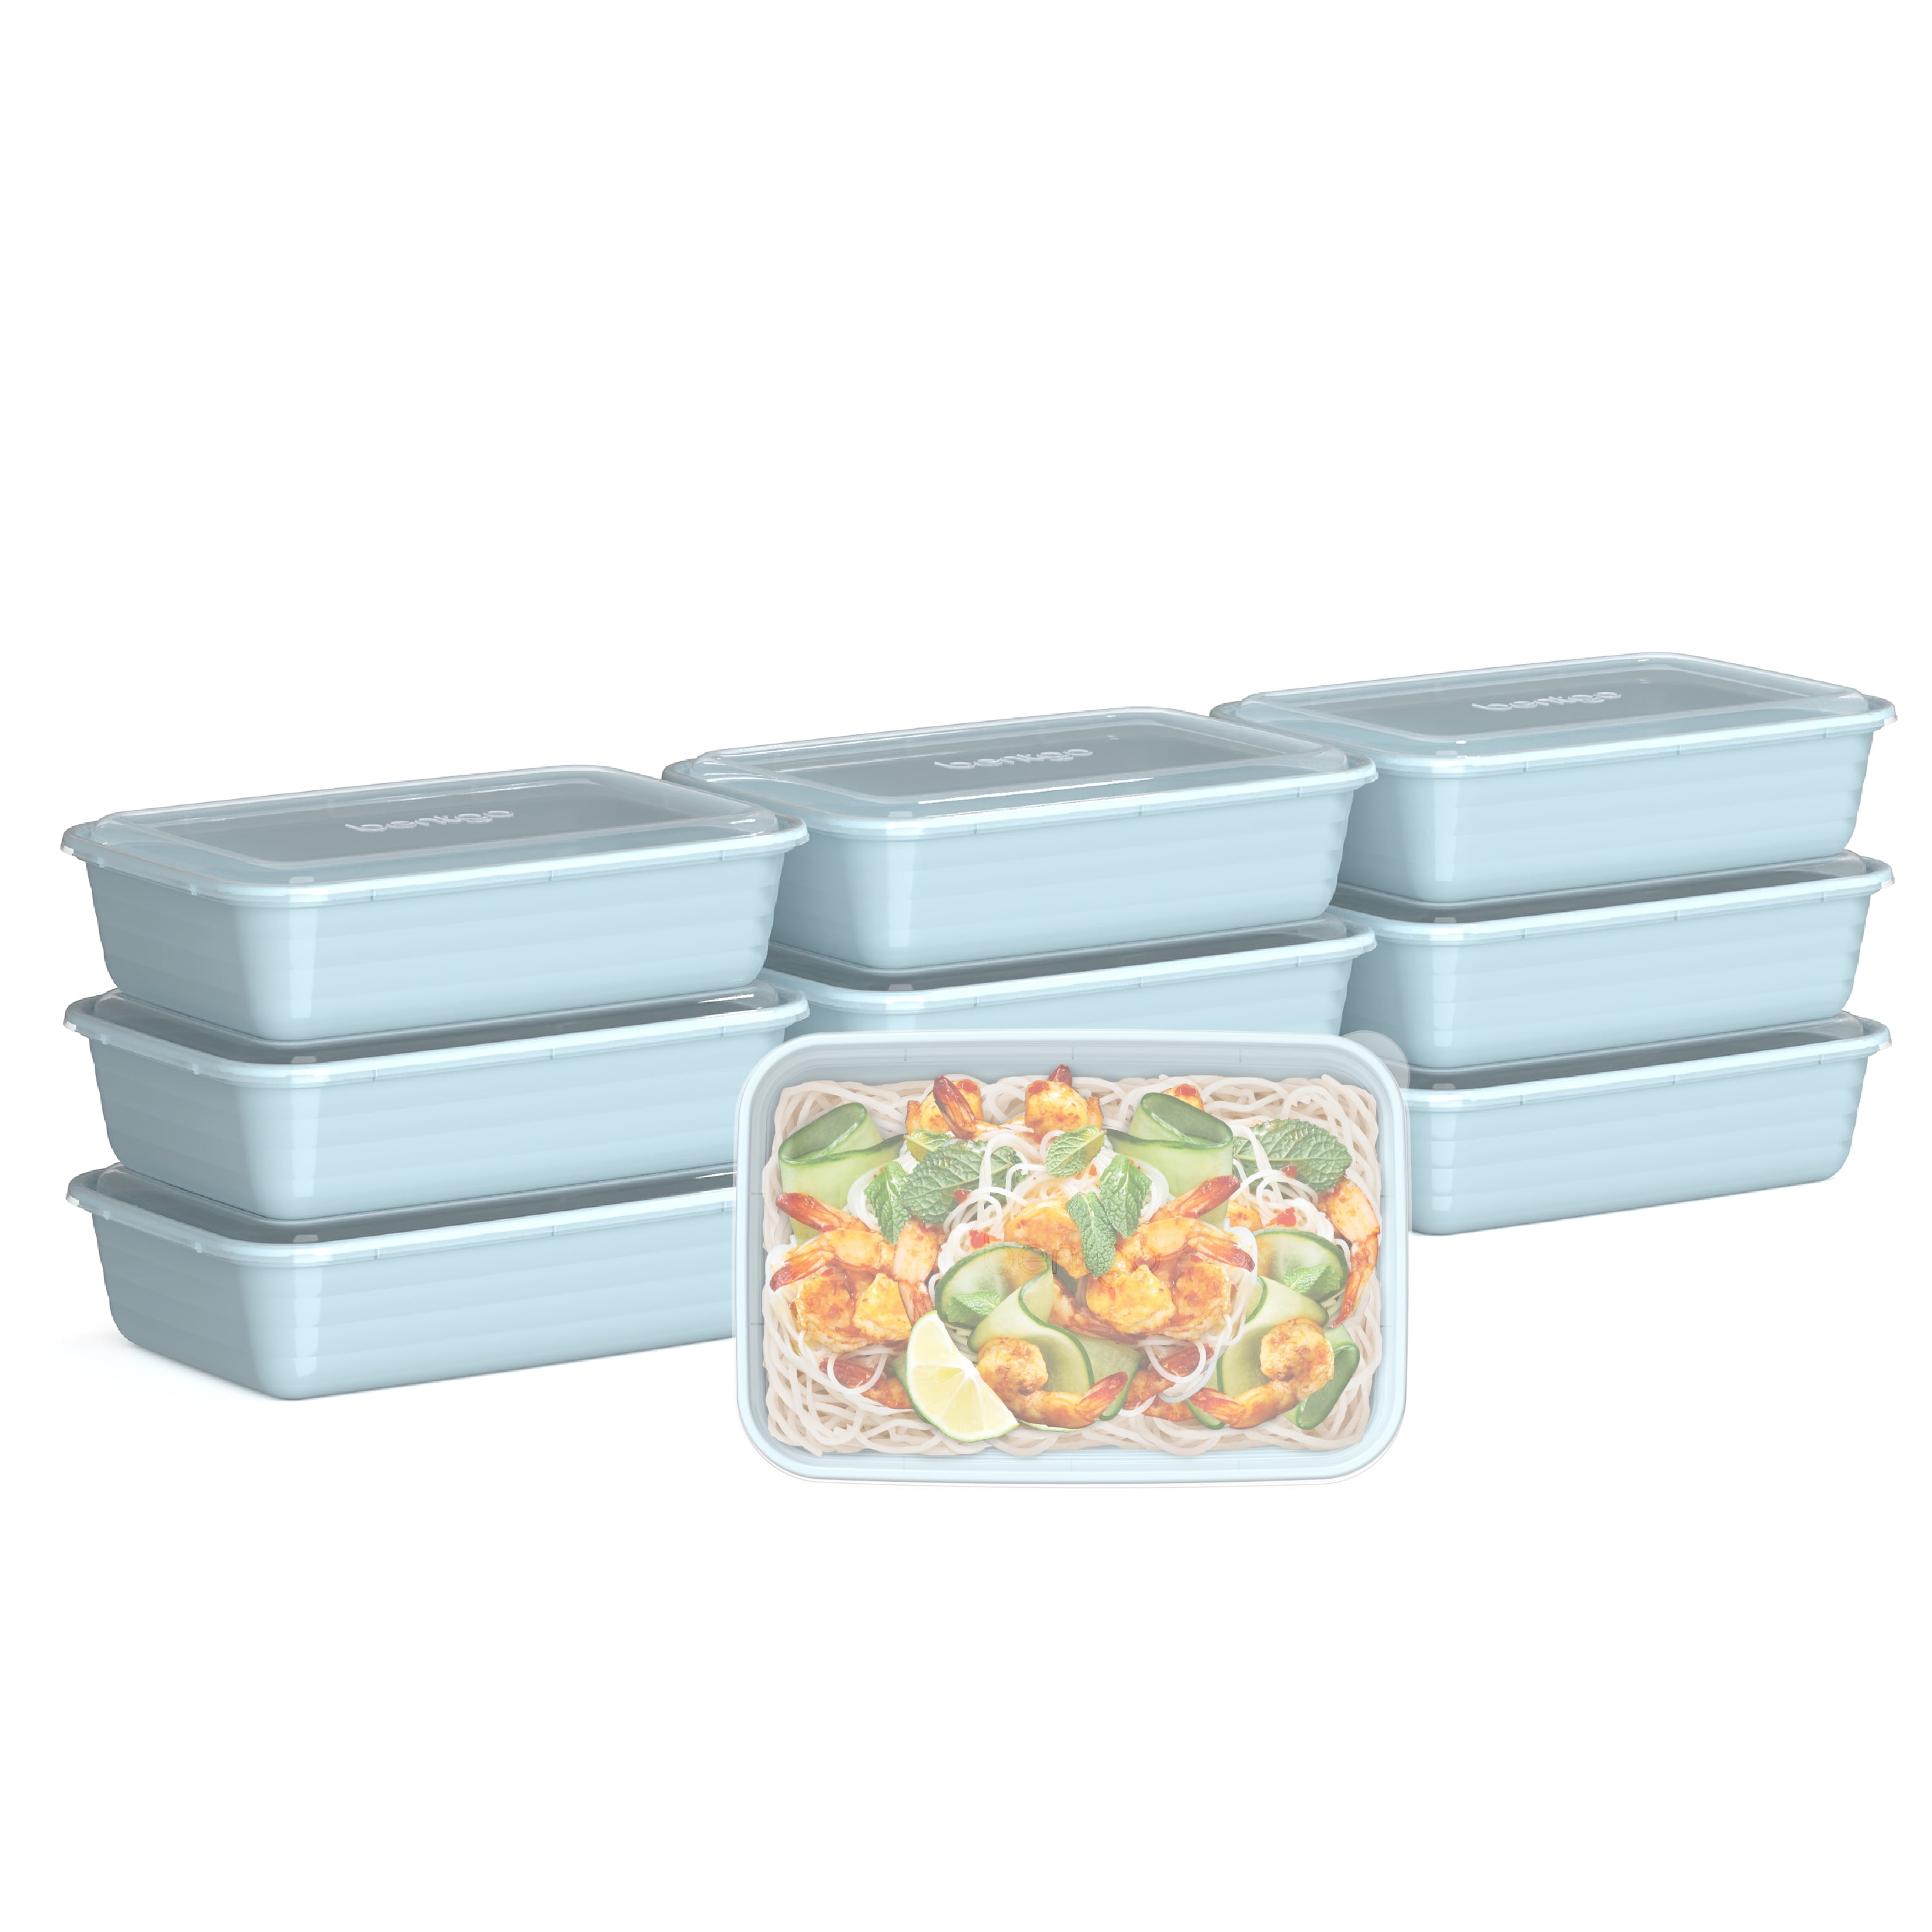 Bentgo® Prep Meal Prep Food Storage Kit, 60 pc - Kroger